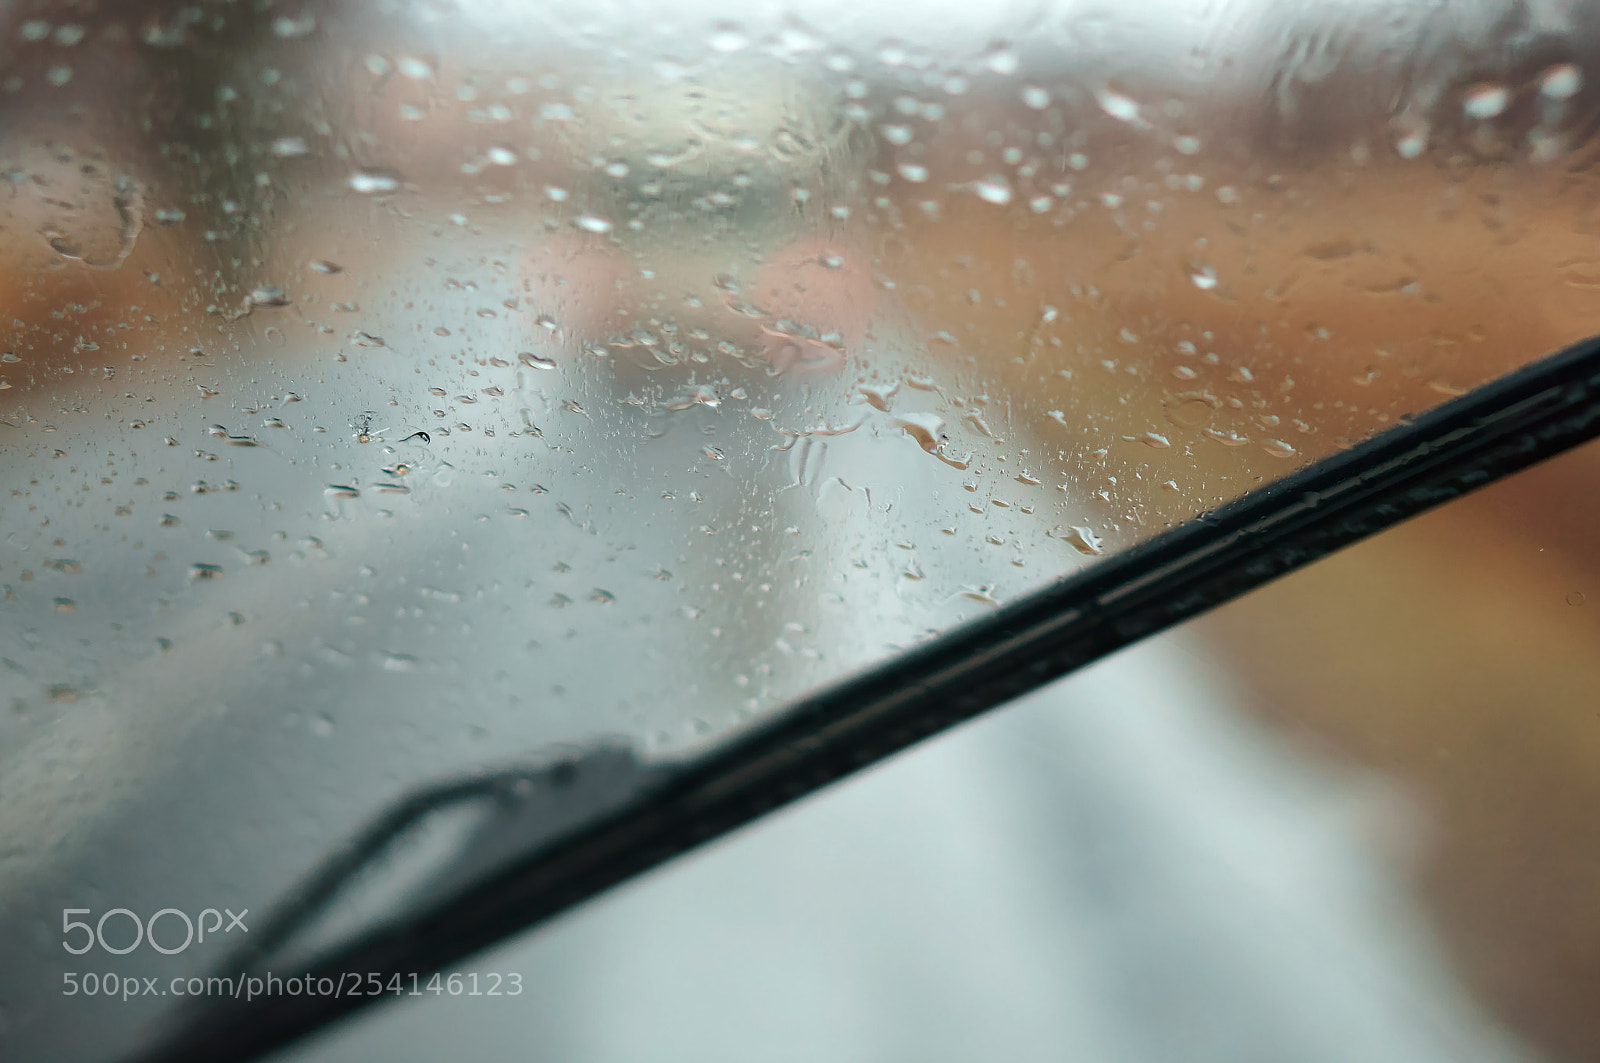 Sony Alpha NEX-3N sample photo. Raindrops on car glass photography